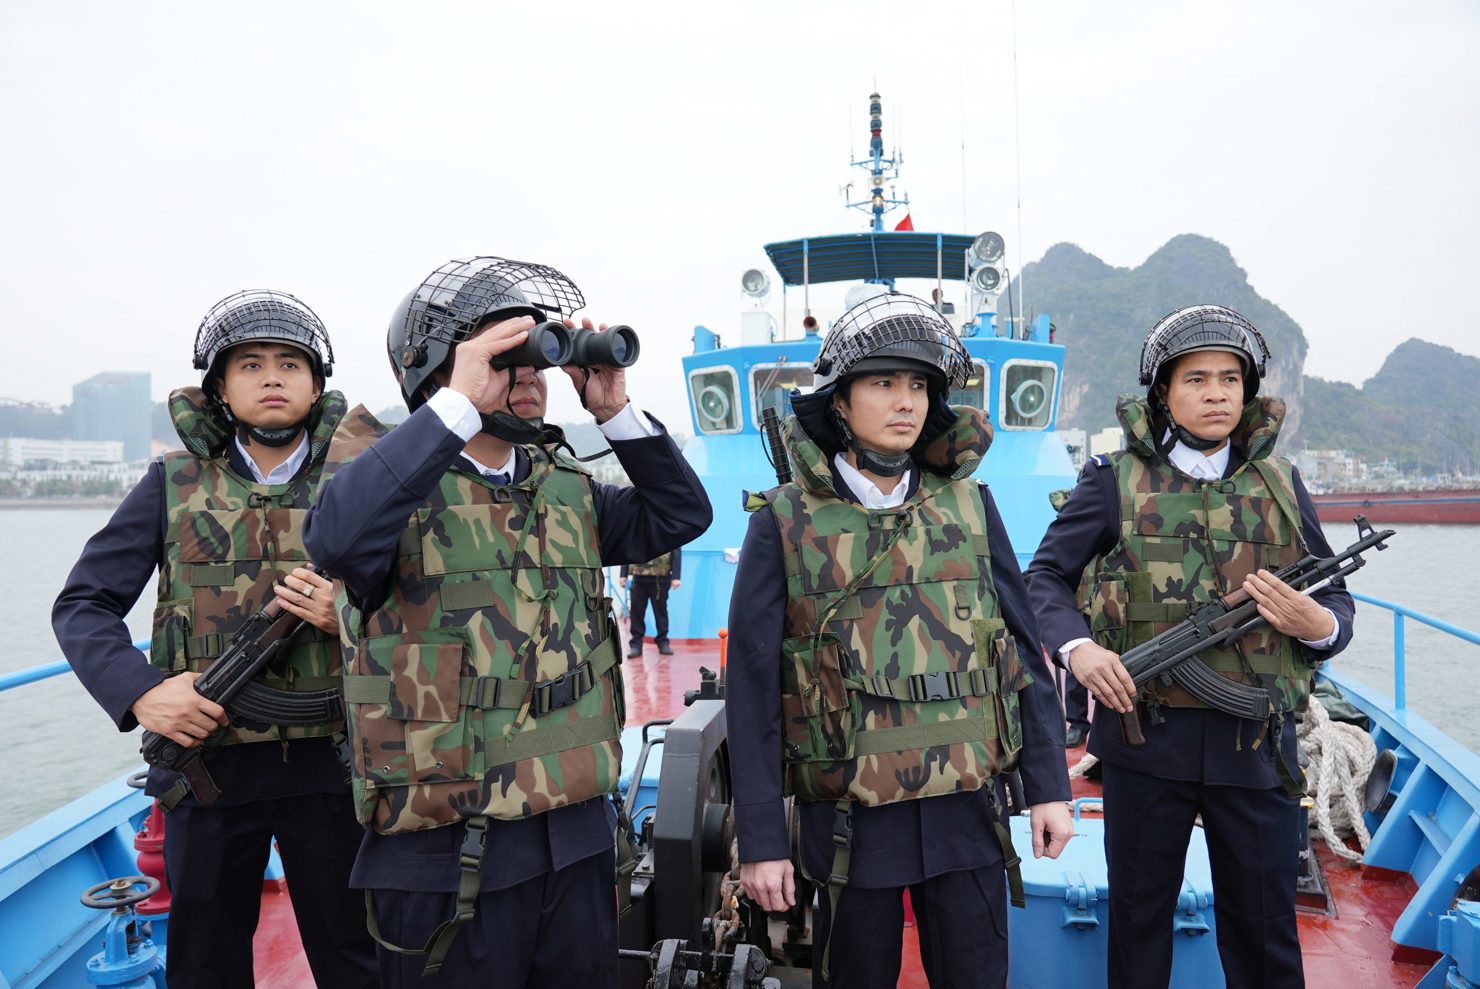 Hải đội 1, Cục Điều tra chống buôn lậu (Tổng cục Hải quan) tuần tra, kiểm soát trên vùng biển Quảng Ninh.